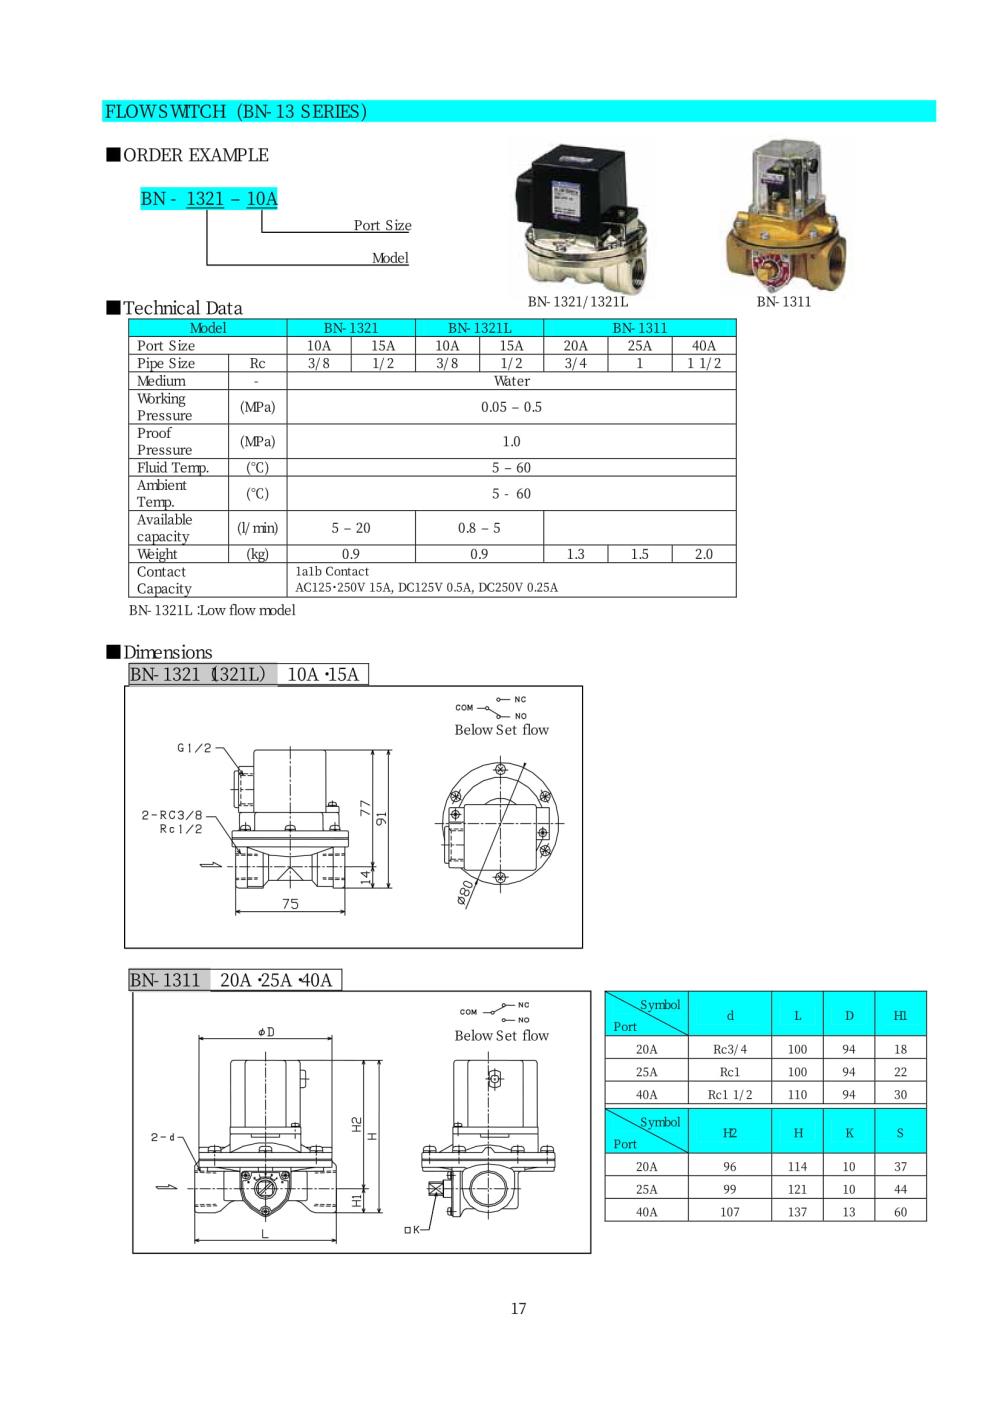 NIHON SEIKI Flow Switch BN-13 Series,BN-13 Series, BN-1321-10A, BN-1321-15A, BN-1321L-10A, BN-1321L-15A, BN-1311-20A, BN-1311-25A, BN-1311-40A,NIHON SEIKI, NISCON, Flow Switch,NIHON SEIKI,Instruments and Controls/Instruments and Instrumentation